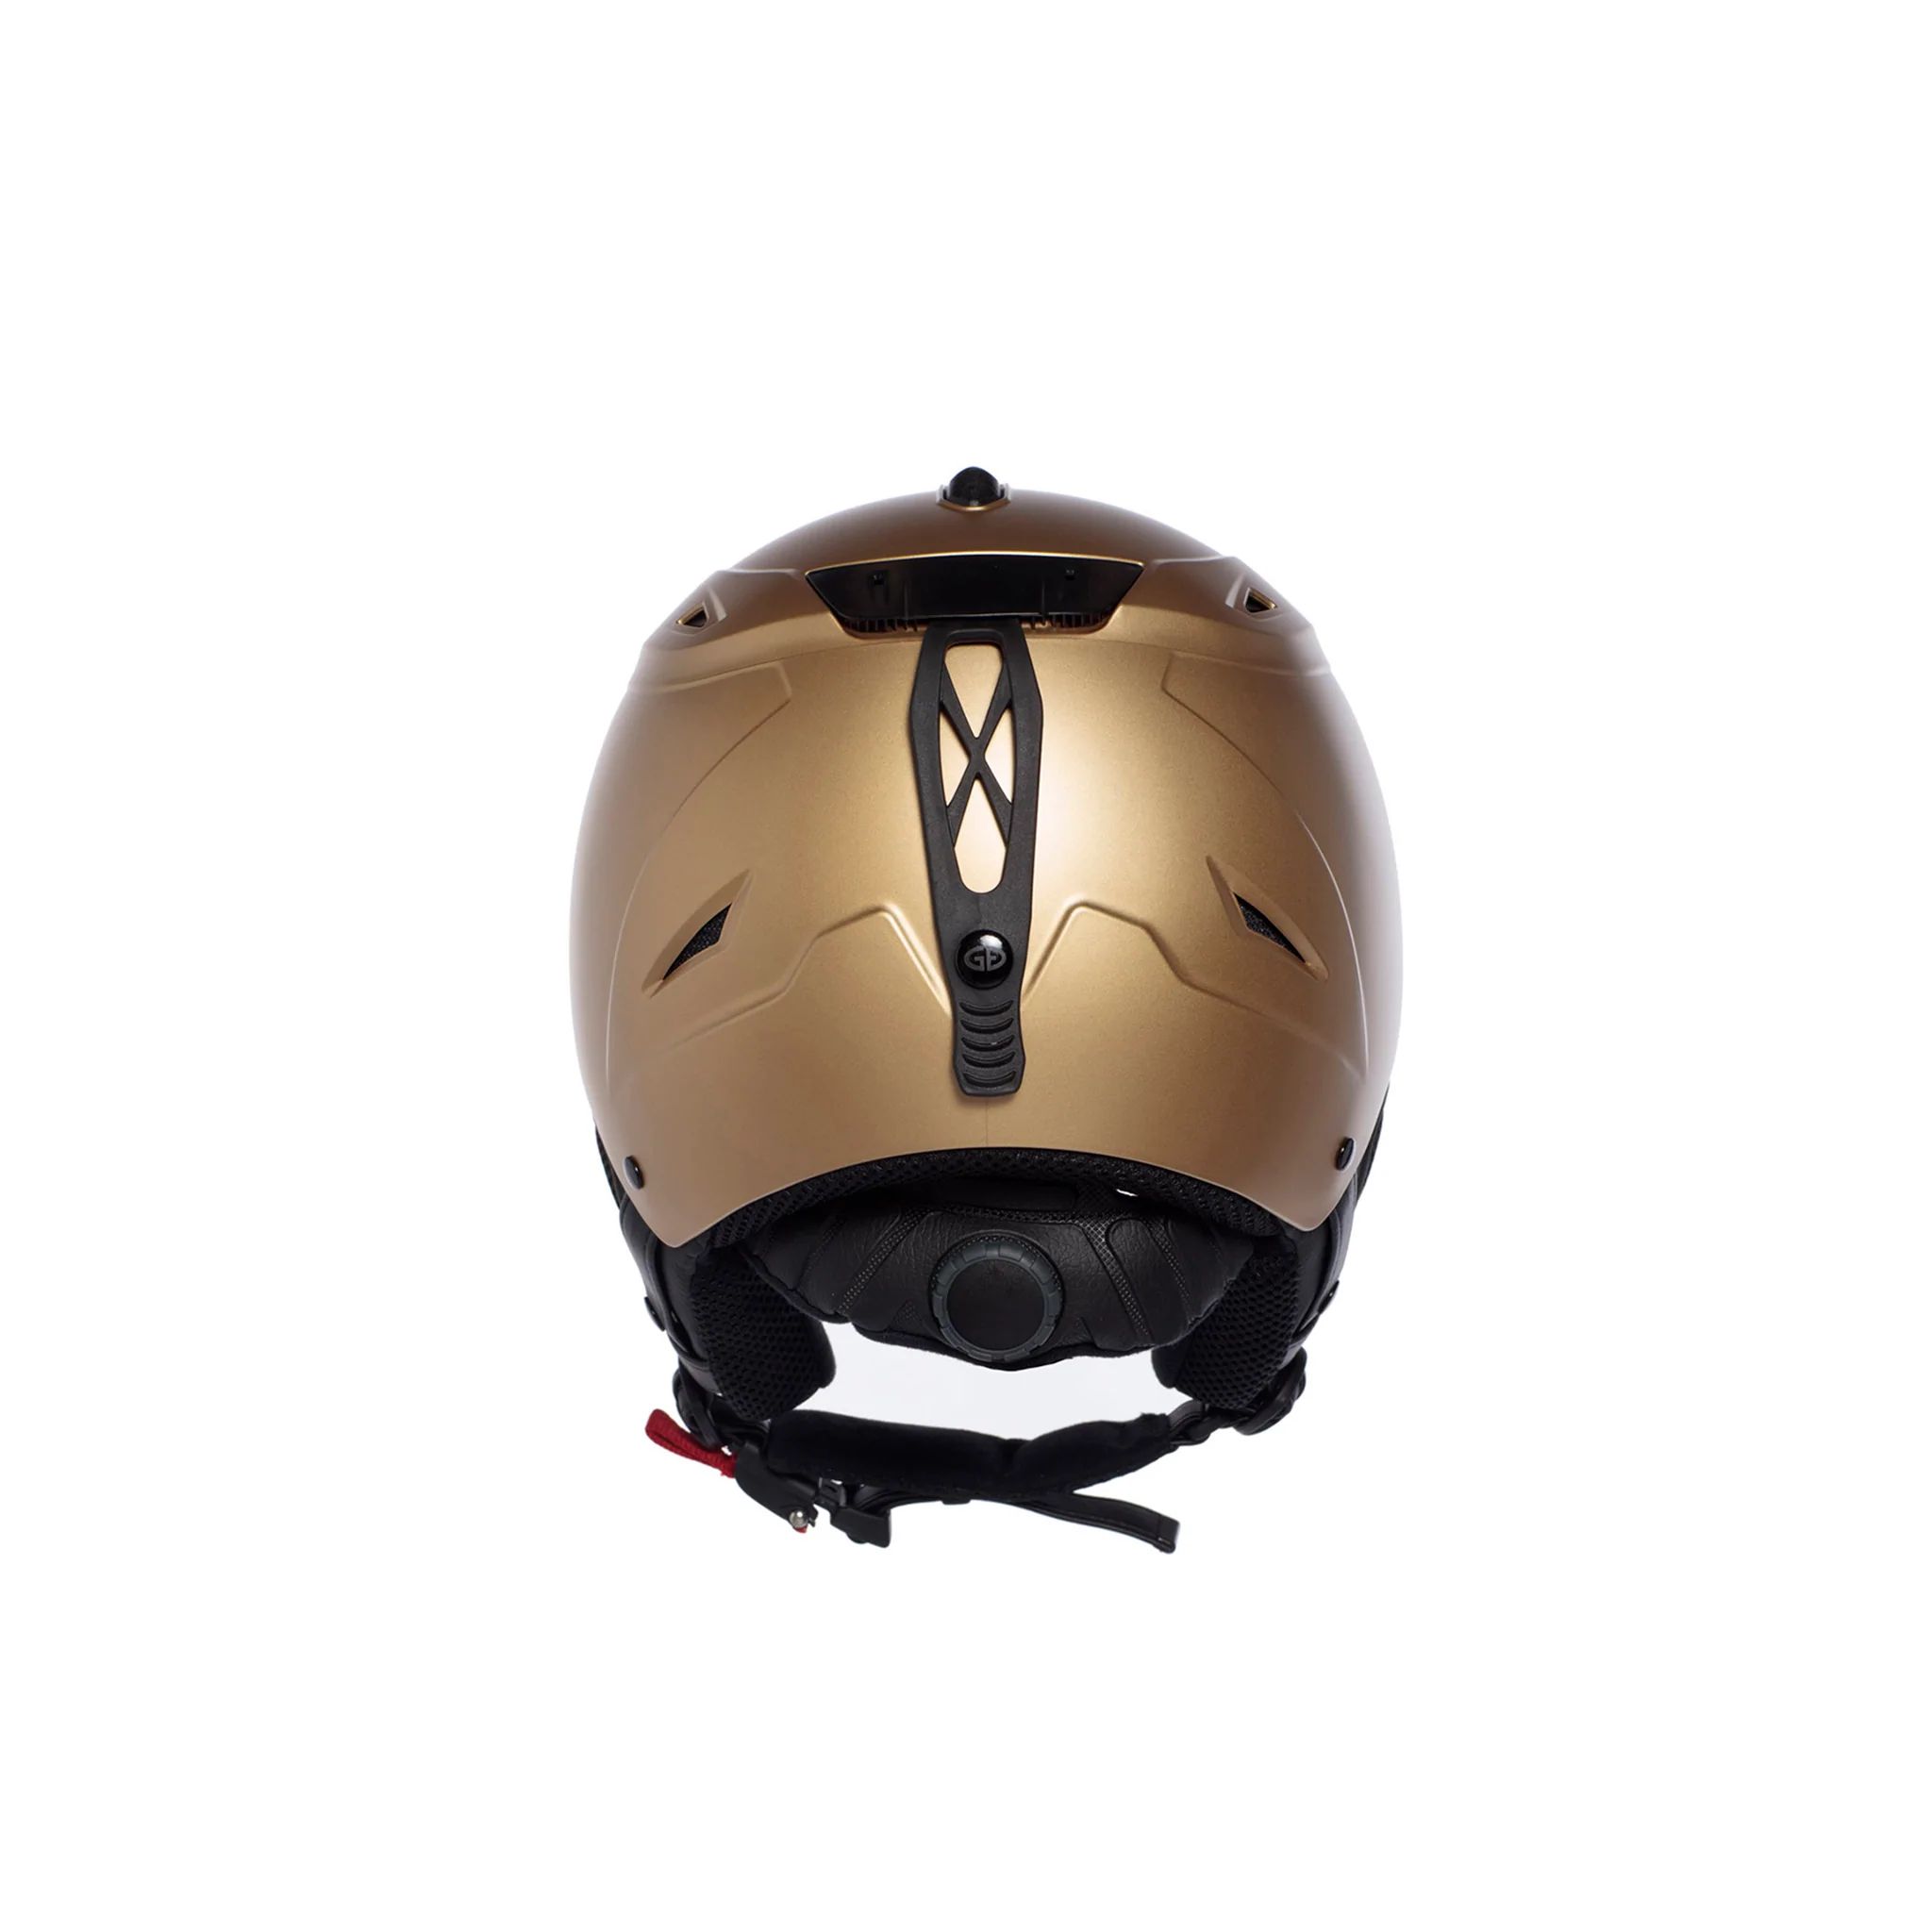  Ski Helmet	 -  goldbergh KHLOE Helmet